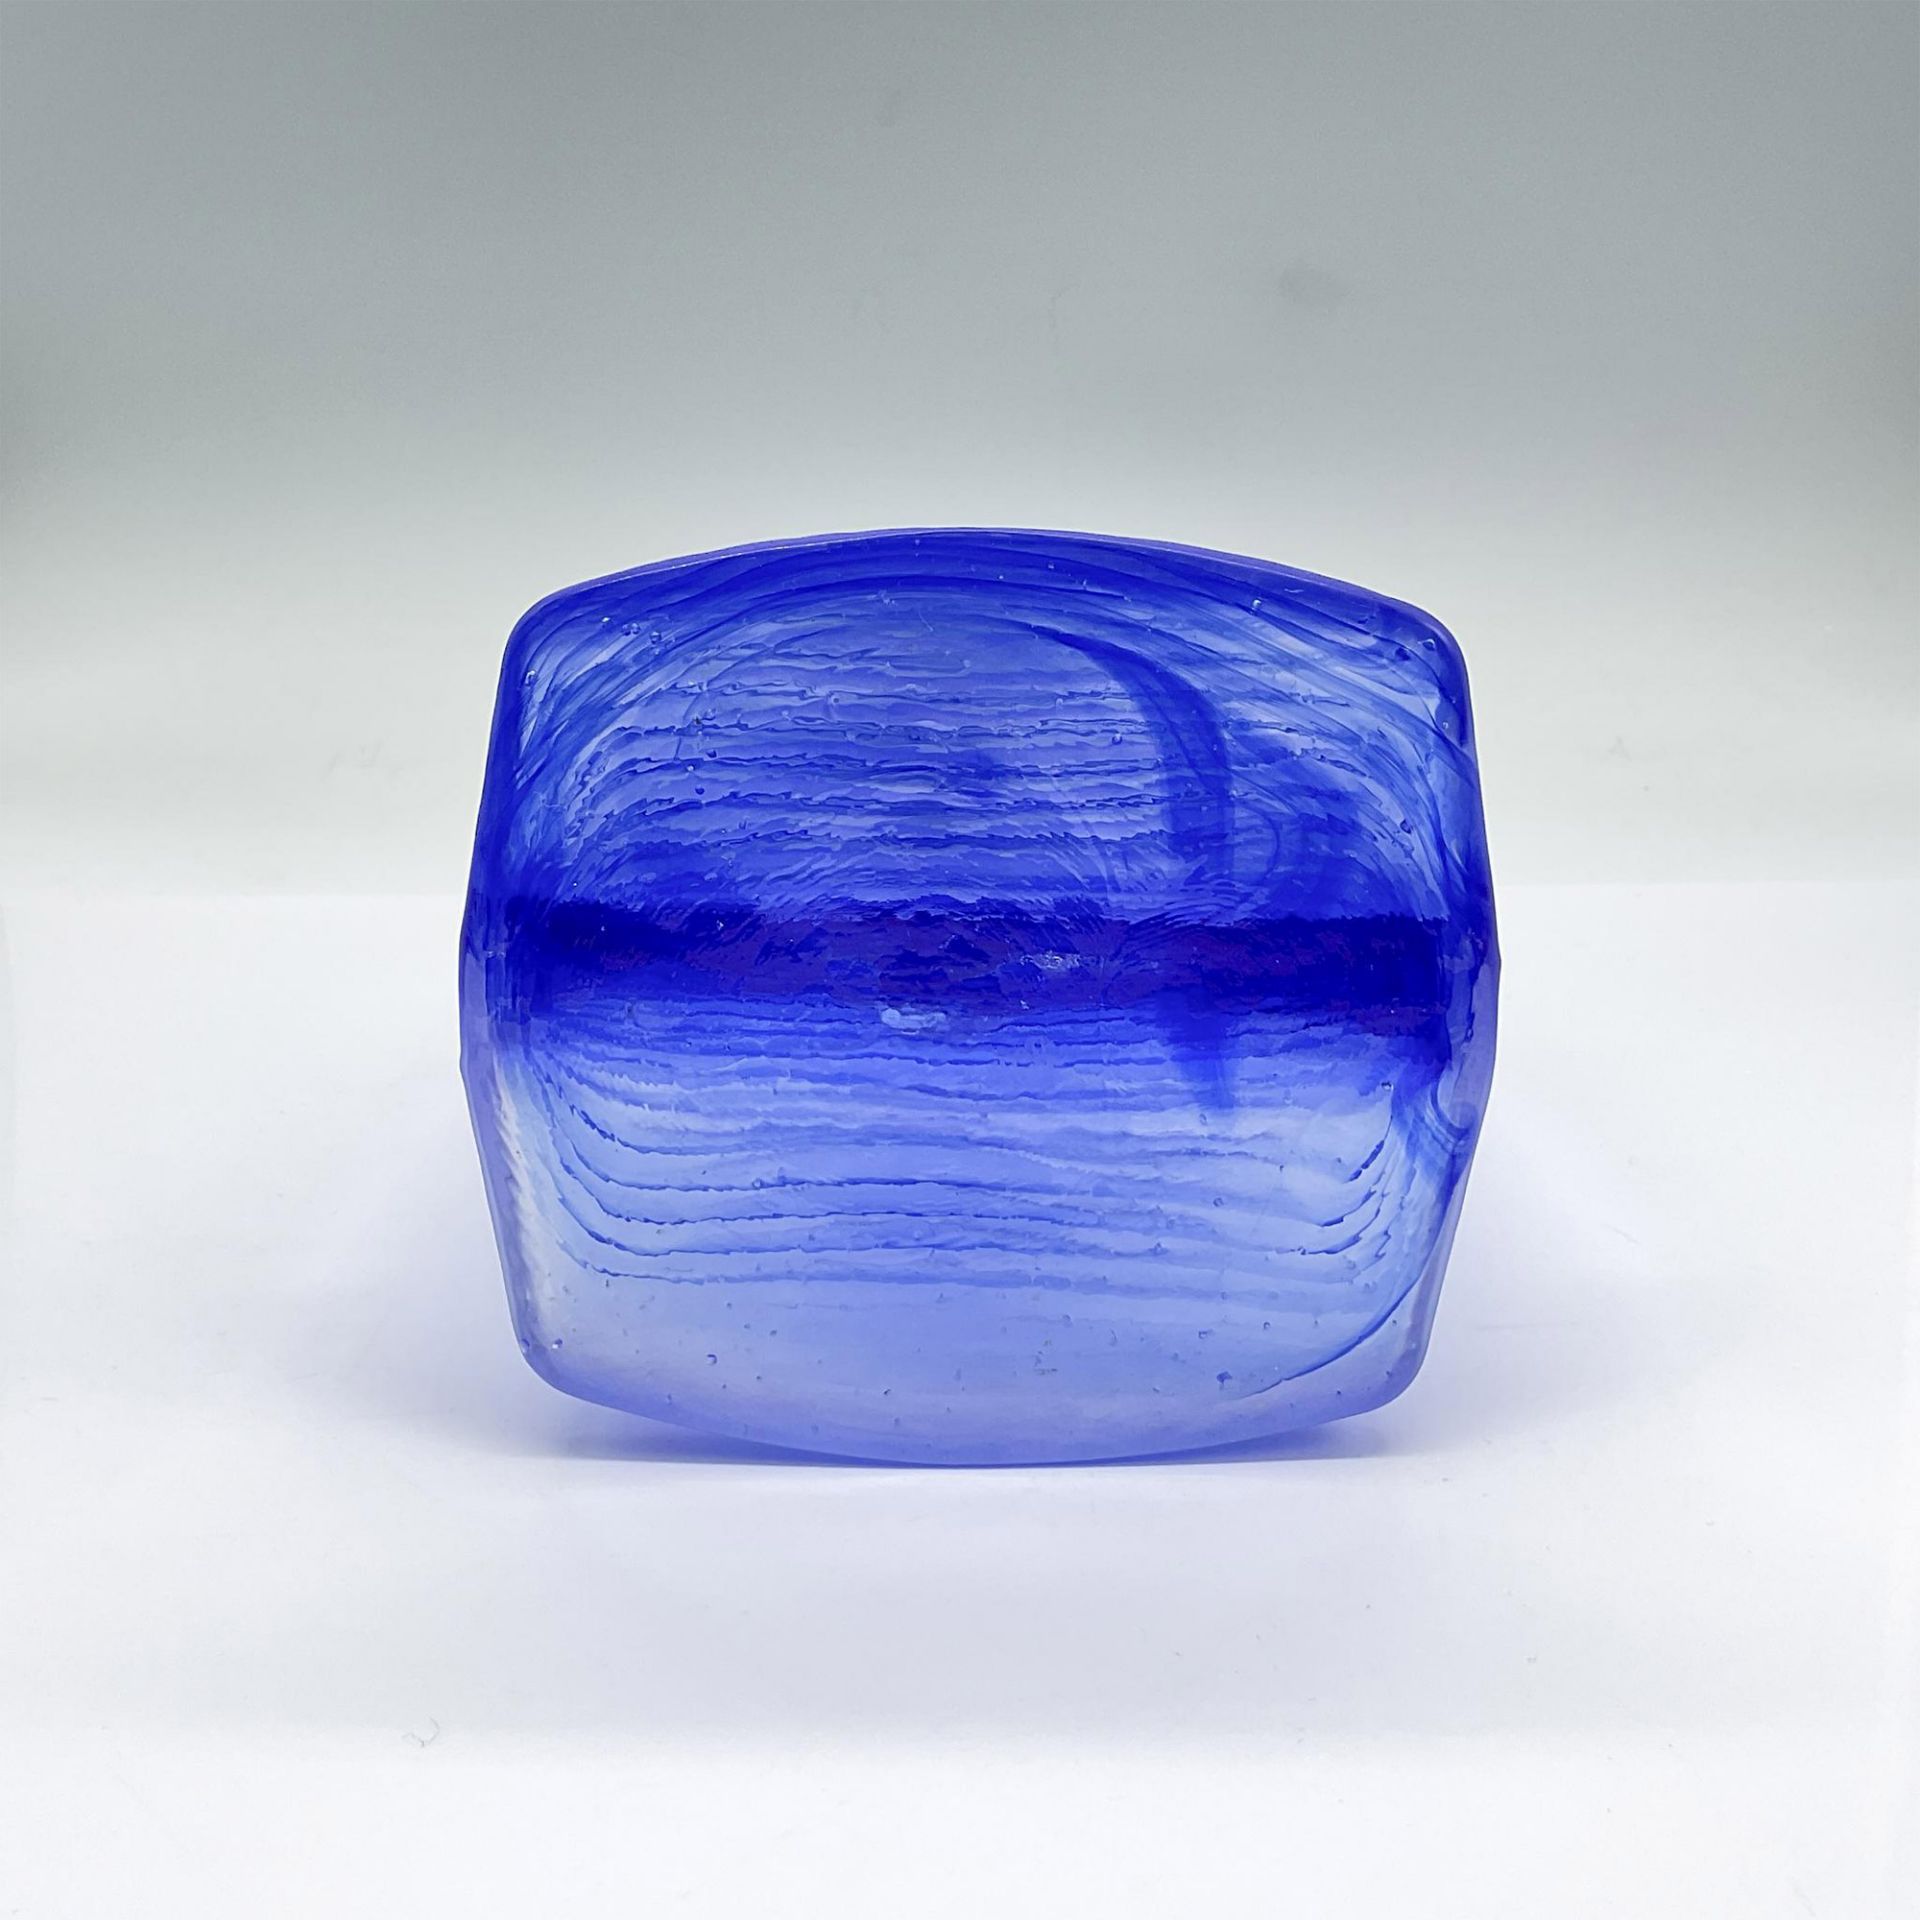 Kosta Boda Glass Candleholder, Ice Age Blue - Image 3 of 3